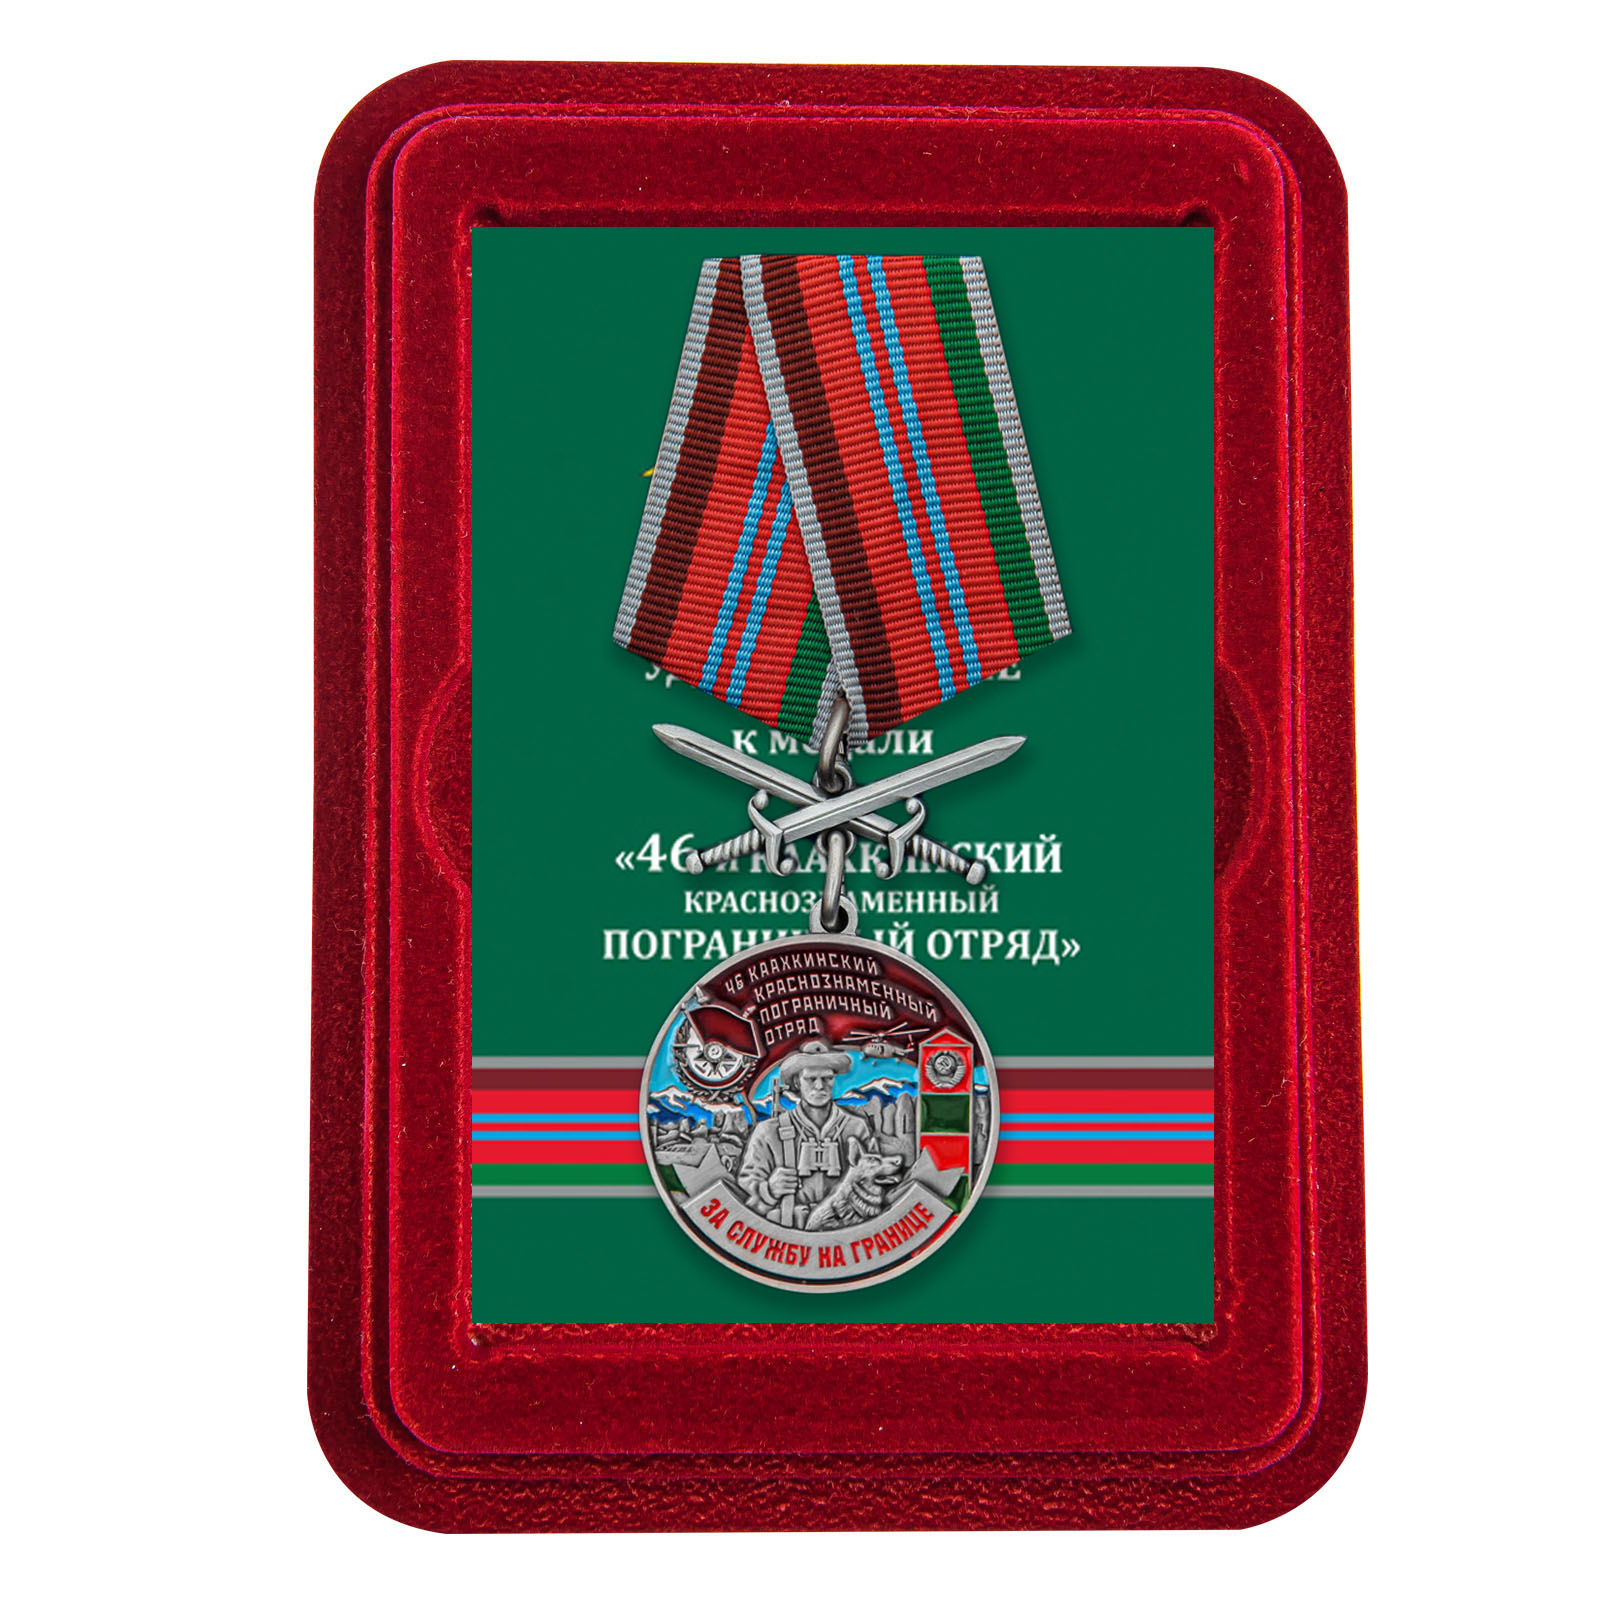 Купить медаль За службу в Каахкинском пограничном отряде онлайн